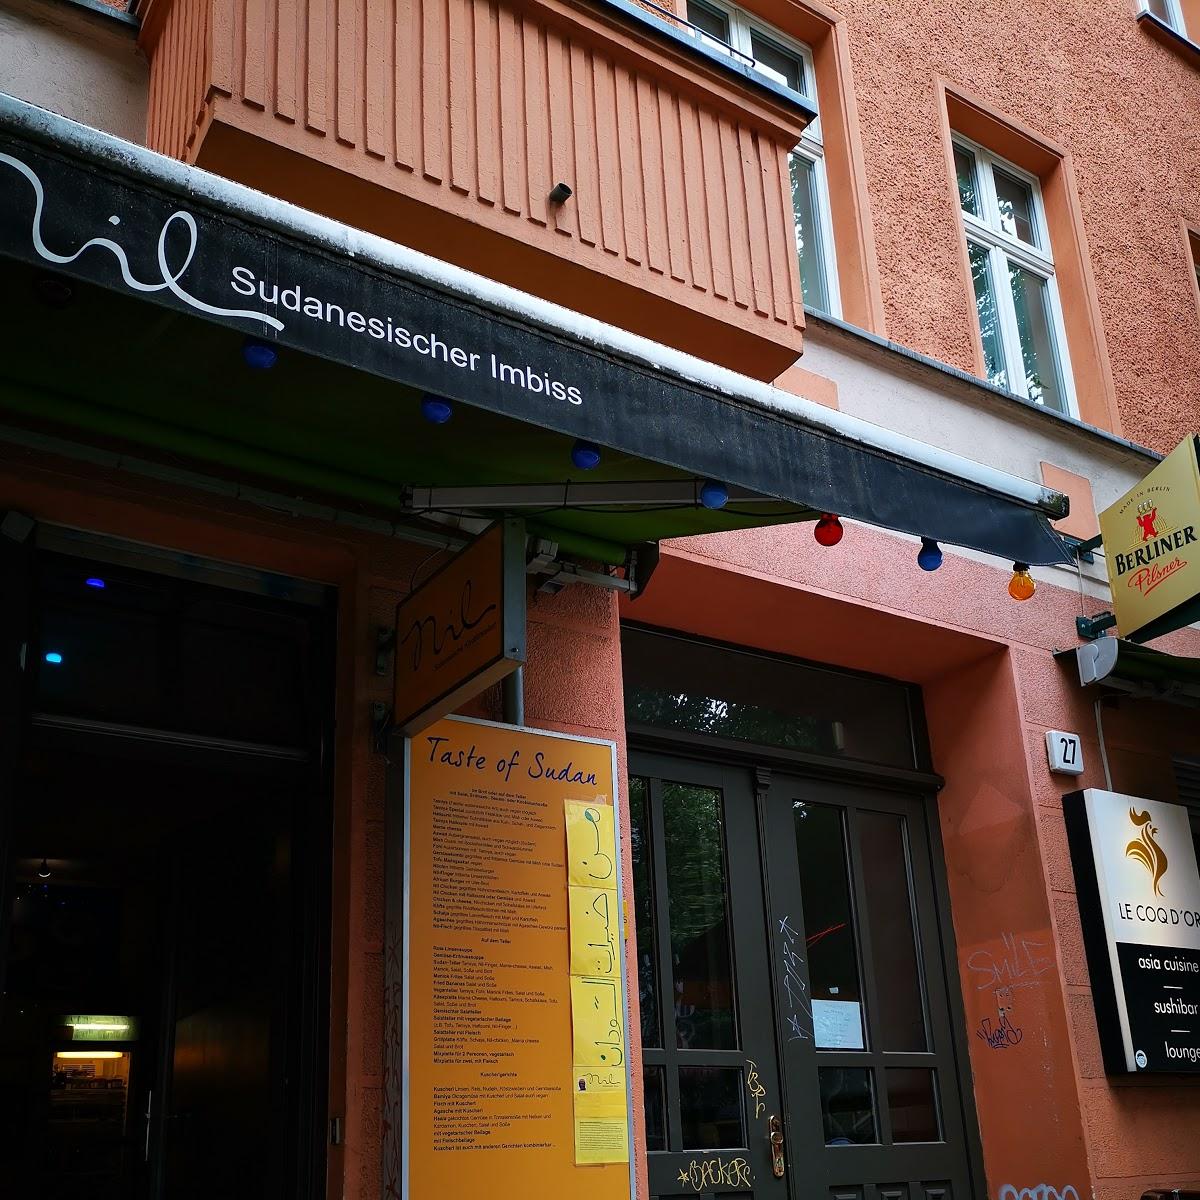 Restaurant "Restaurant Nil - sudanesische Spezialitäten" in Berlin